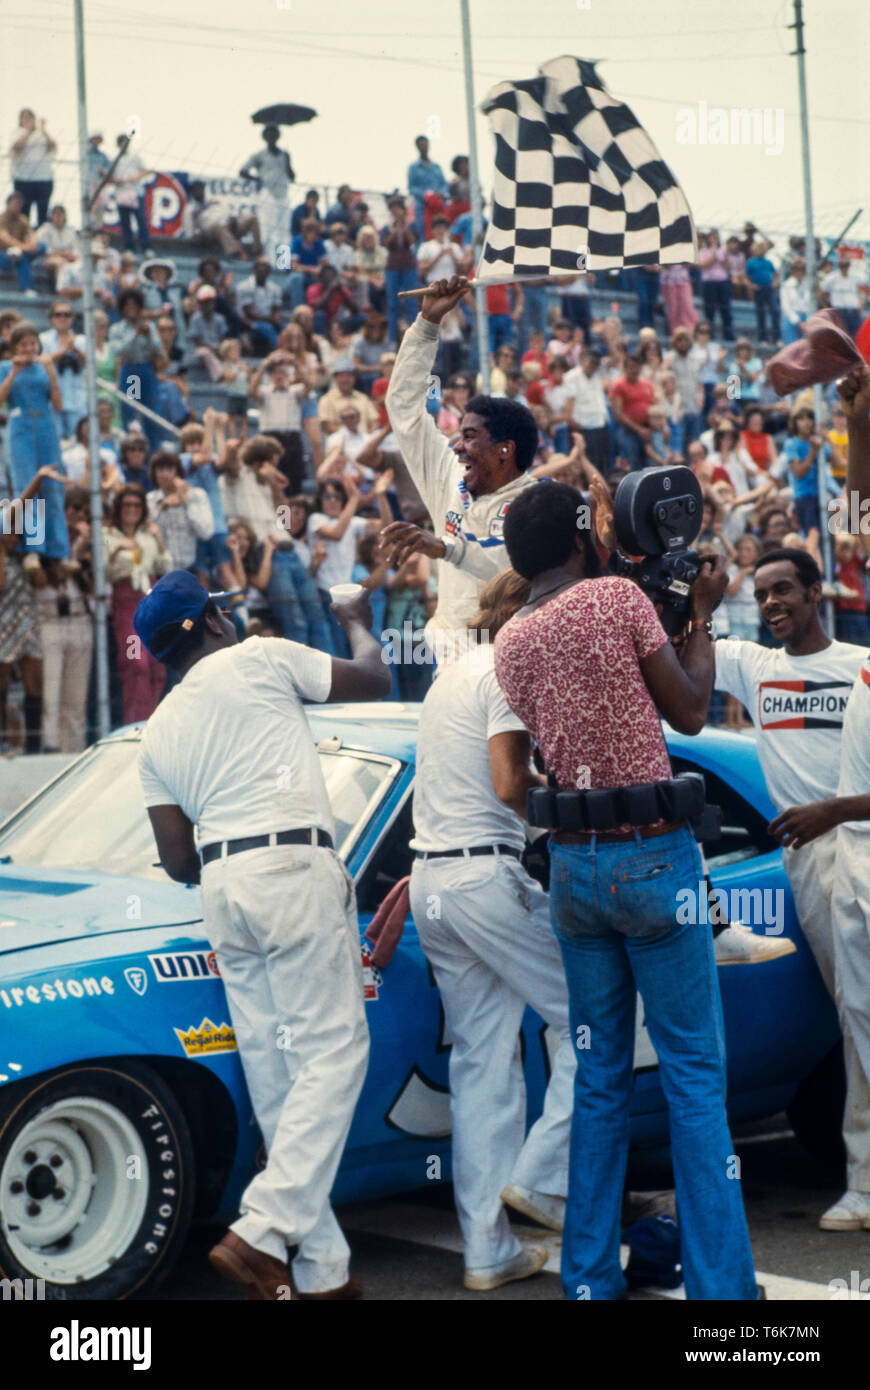 Komiker und Schauspieler Richard Pryor in einer abendfüllenden Film mit dem Titel geölter Blitz, die Geschichte der ersten afrikanischen amerikanischen NASCAR Fahrer - Wendell Scott - ein NASCAR Rennen zu gewinnen. Stockfoto